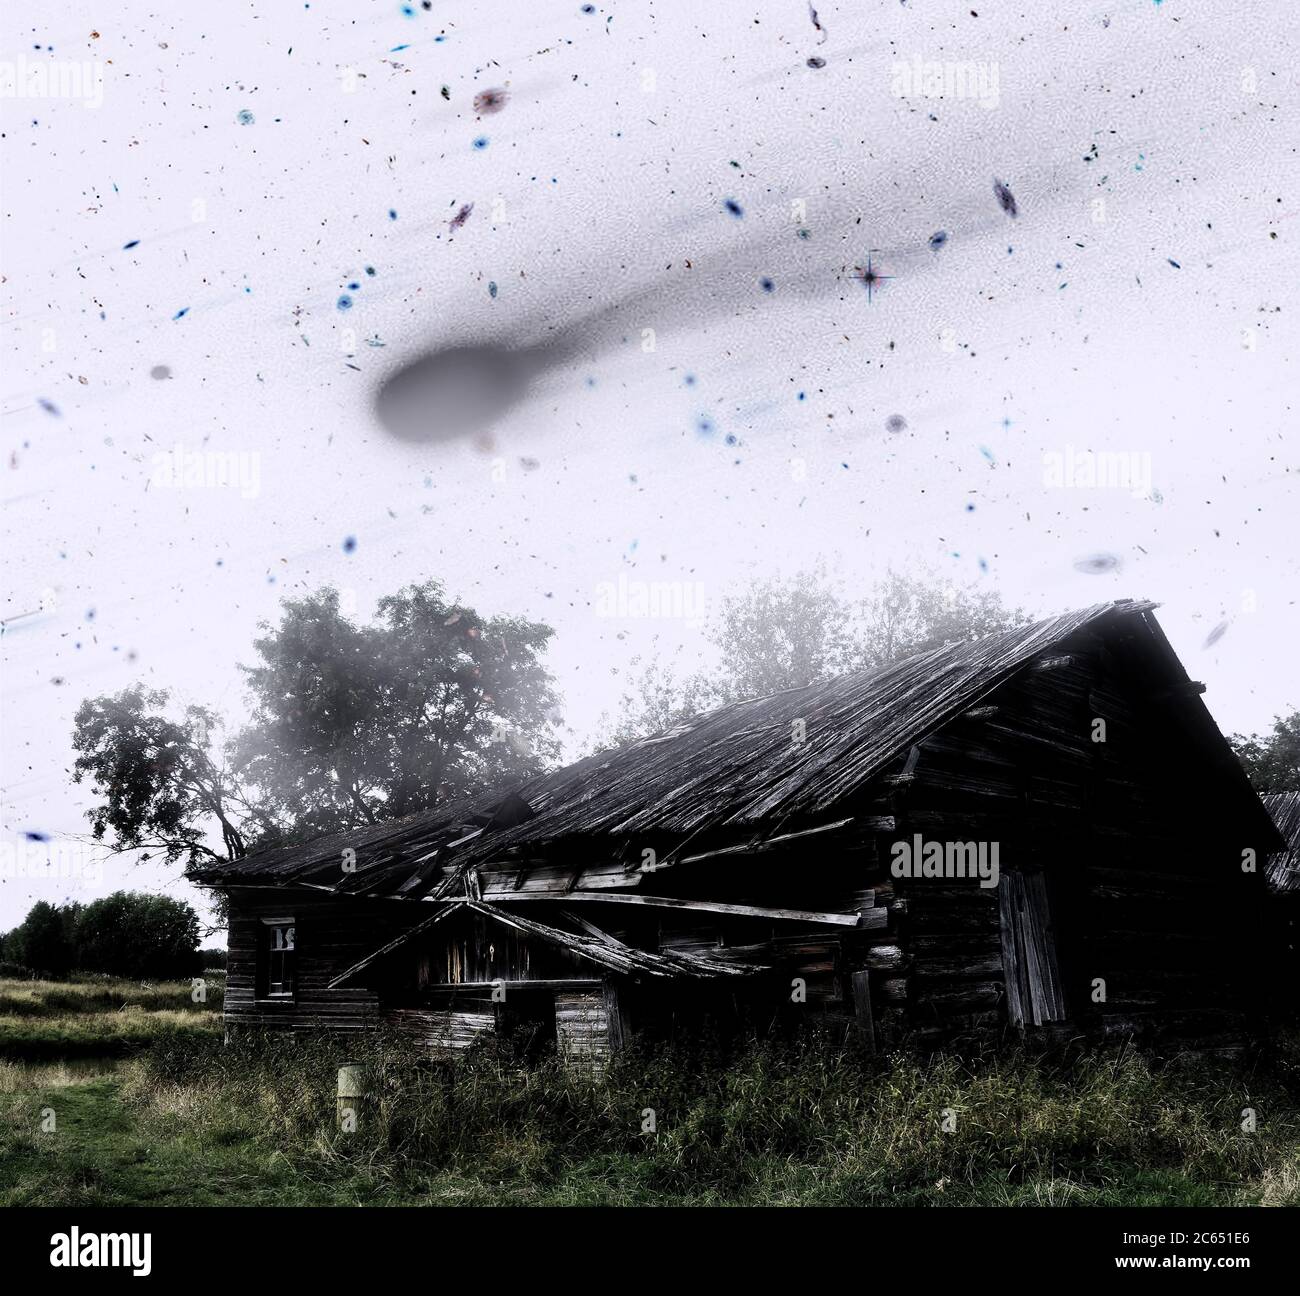 Ein verlassenes Haus in einem Sterbenden Geisterdorf und ein Weltraumkataklysma mit einem Meteoritenfall. Bildelemente, die von der NASA eingerichtet wurden. Stockfoto